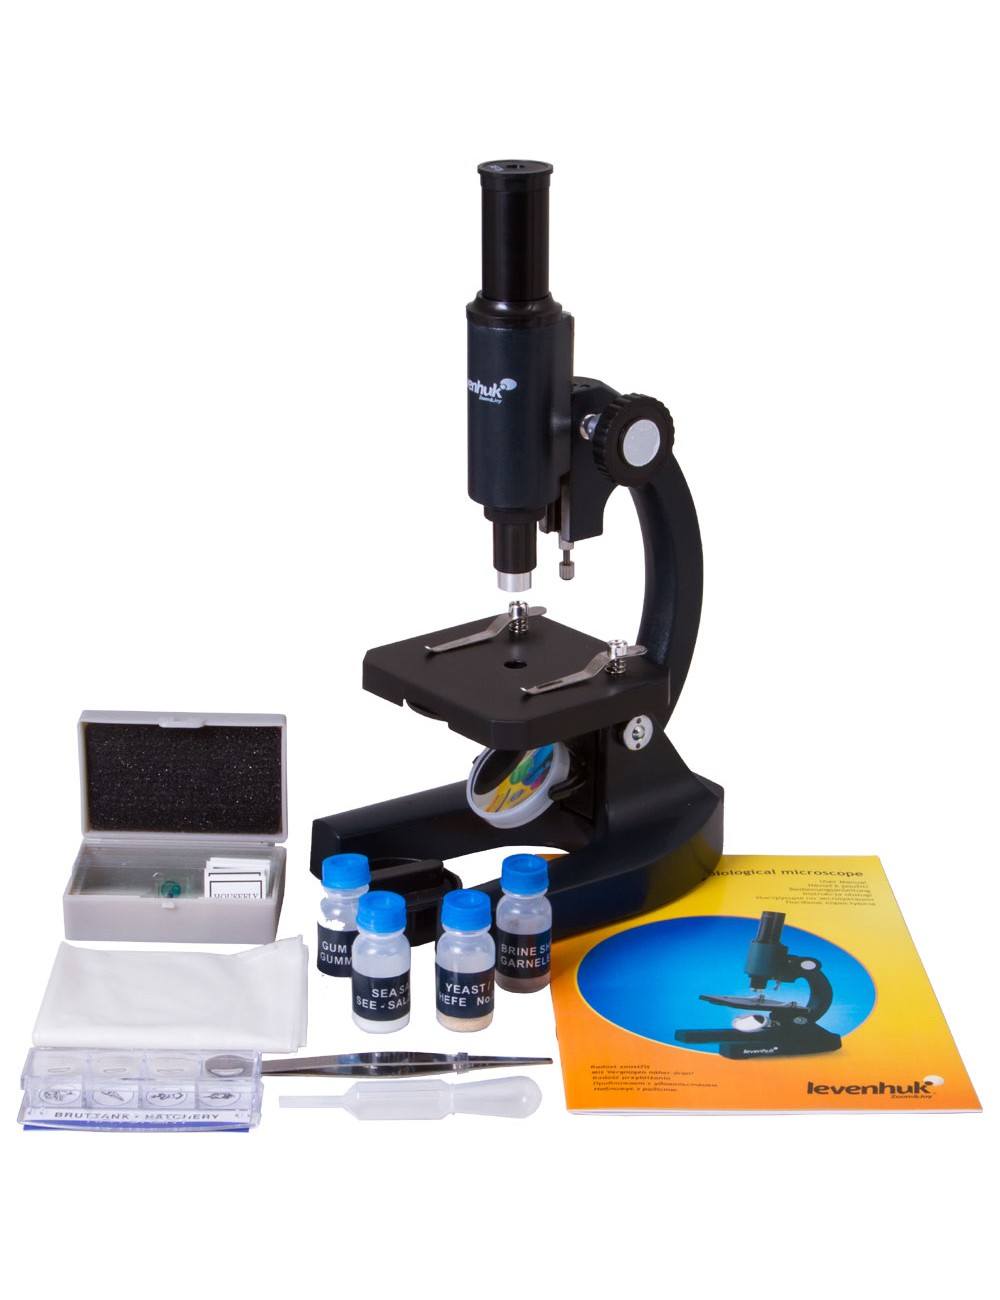 Microscopio 300X-1200X para niños principiantes microscopios monoculares  compuestos de laboratorio con lentes de vidrio óptico e iluminación LED 